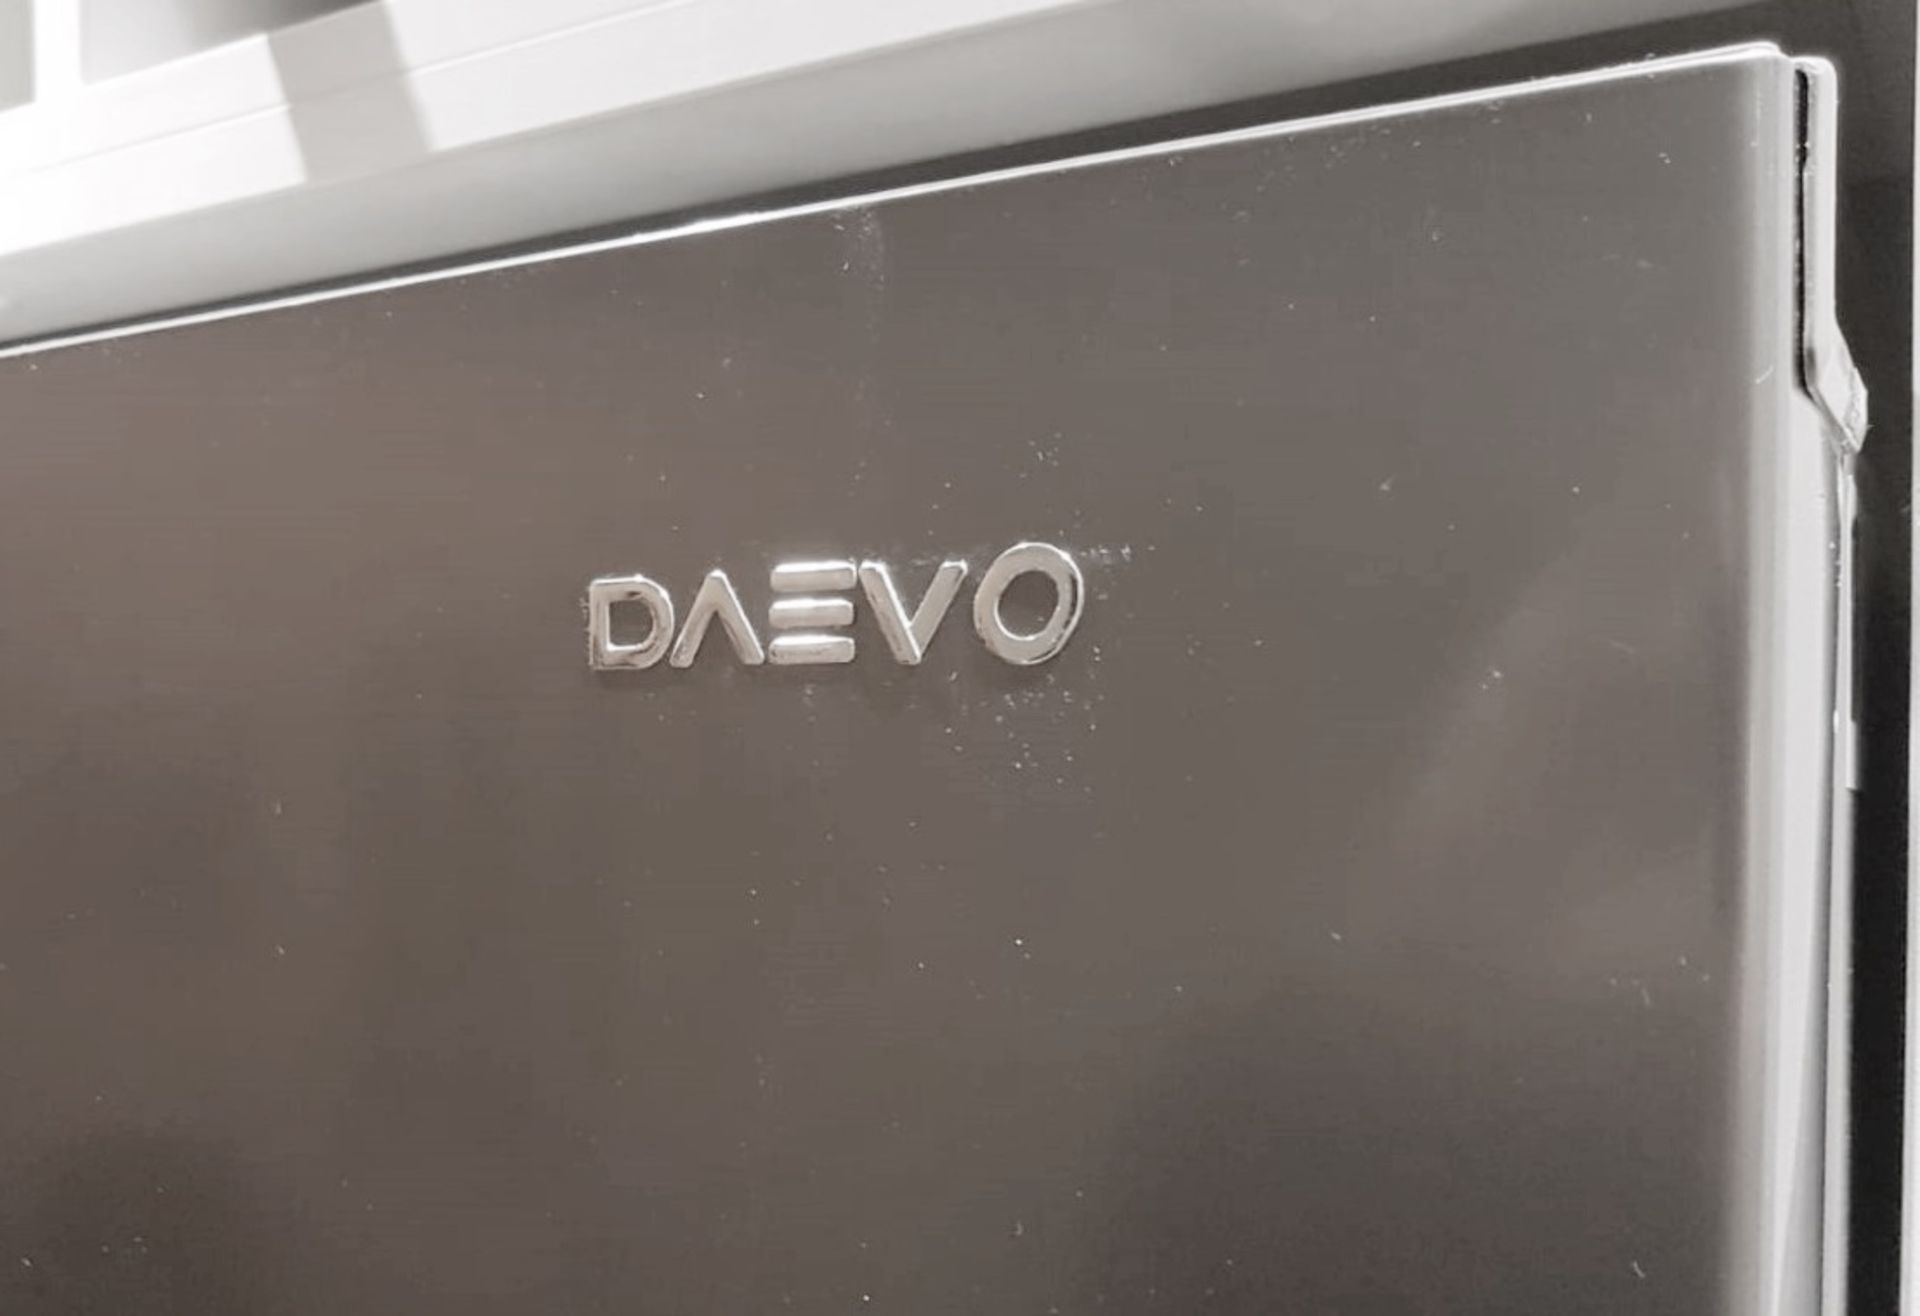 1 x Daewoo Frost Free Side-by-side American Fridge Freezer In Silver - Model: FRAH52B3S - NO VAT - Image 4 of 6